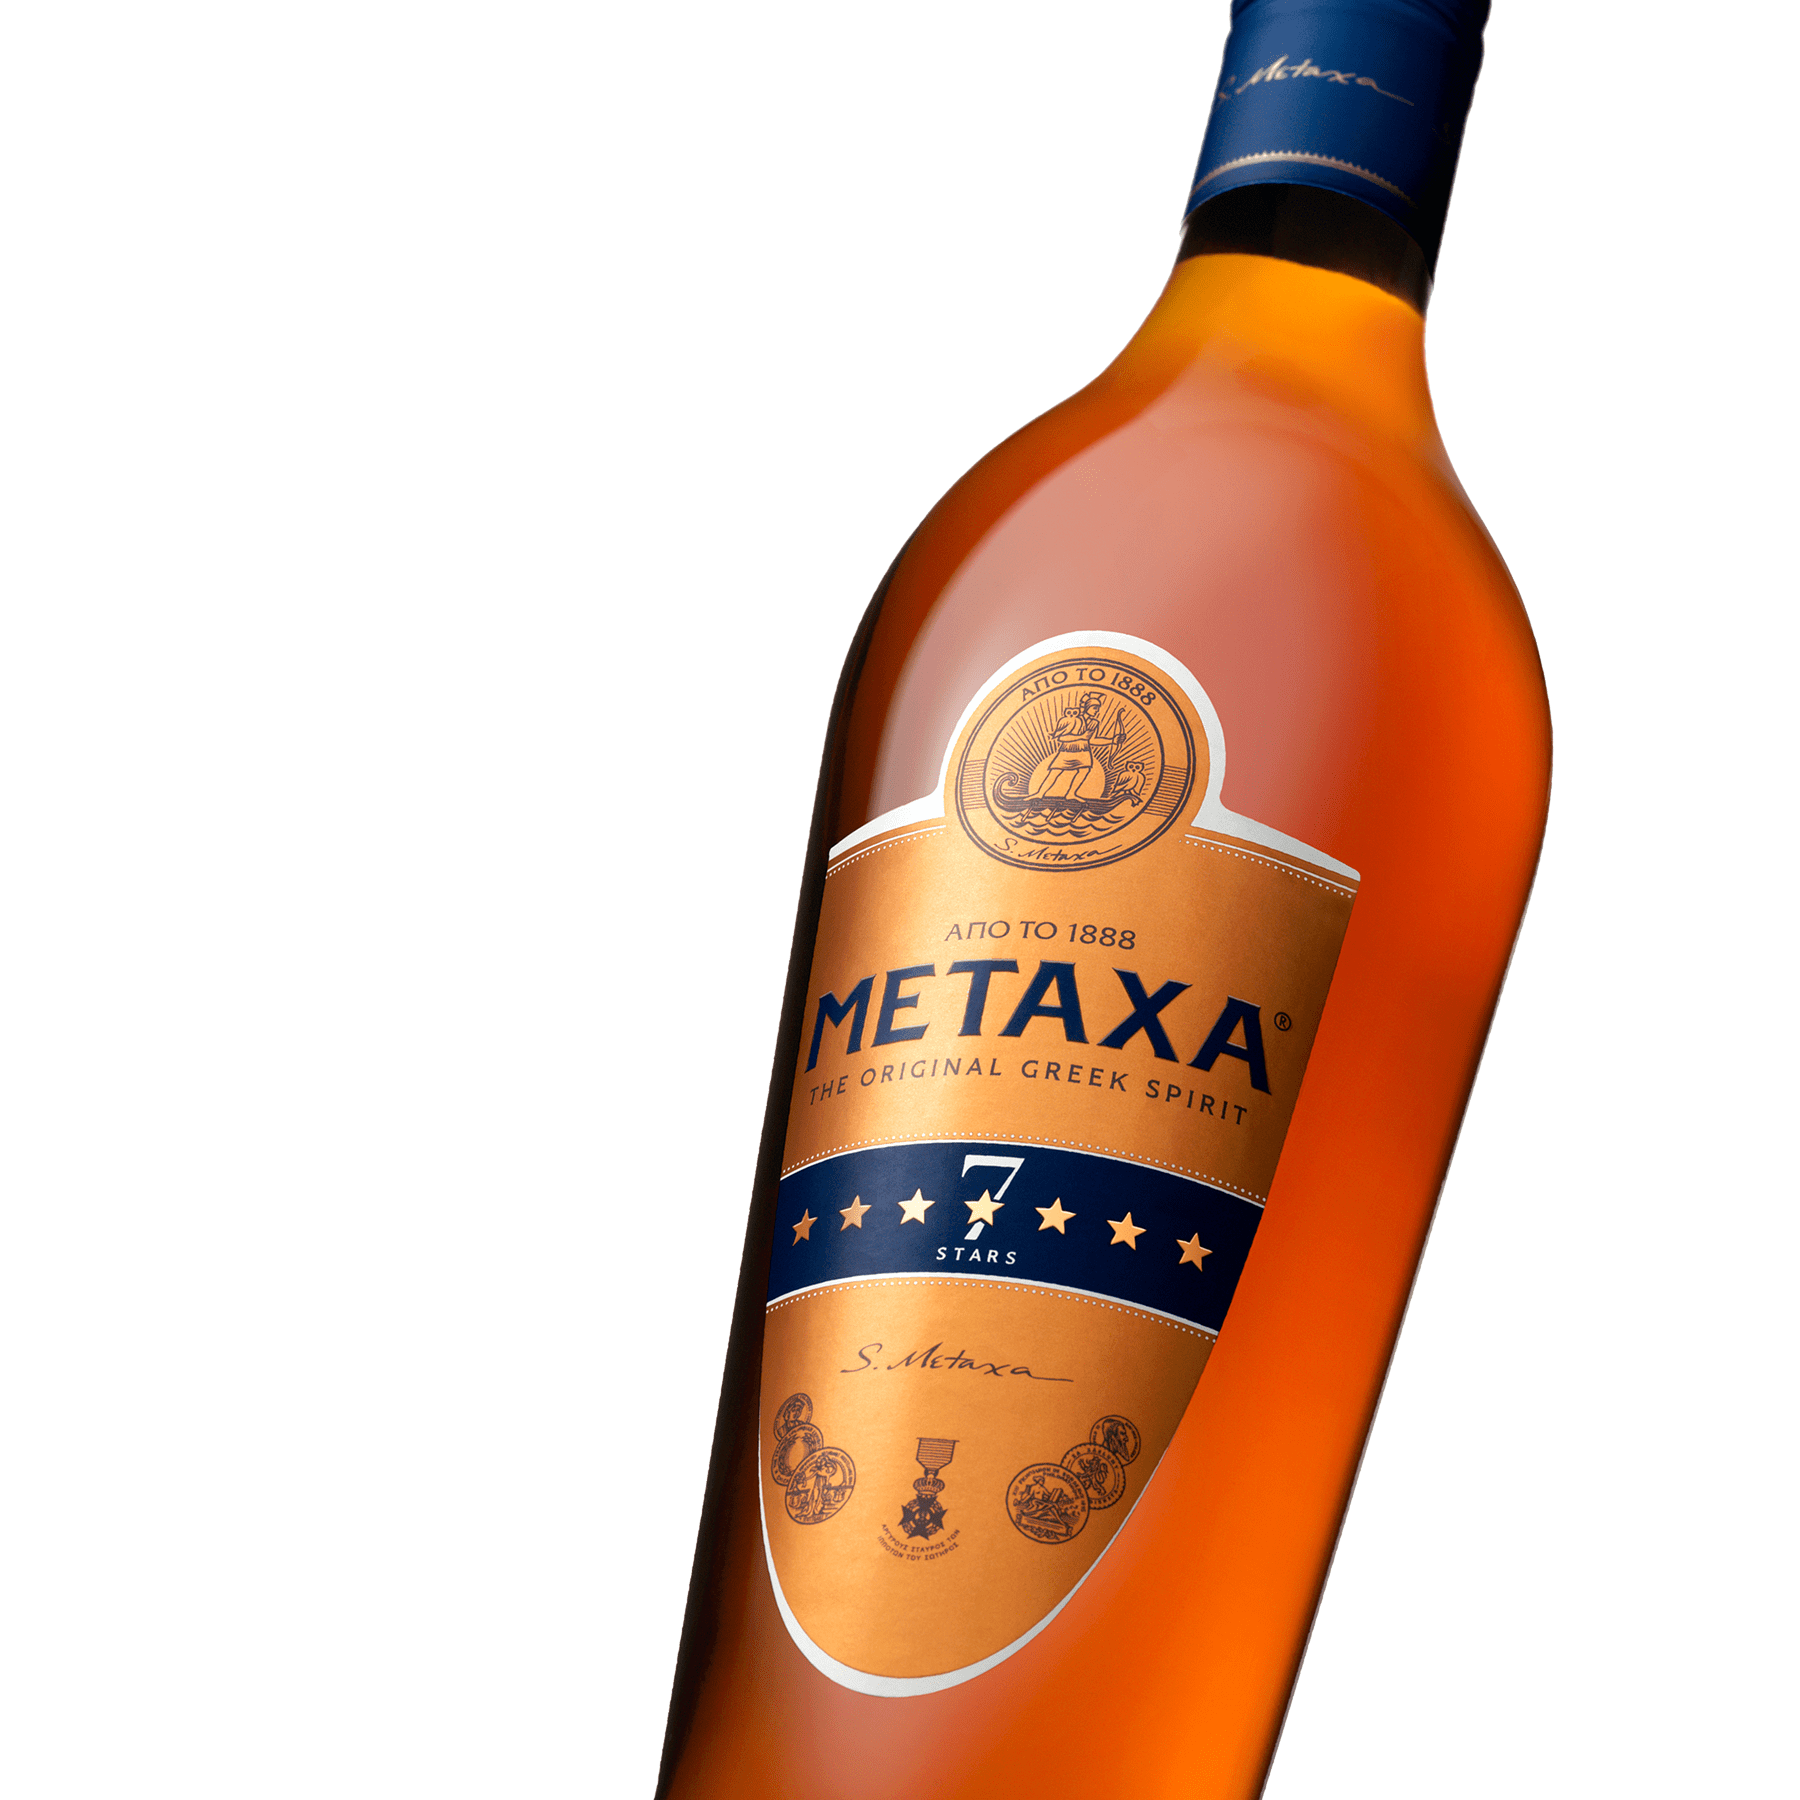 Греческий напиток метакса (metaxa) — коньяк или все-таки бренди?